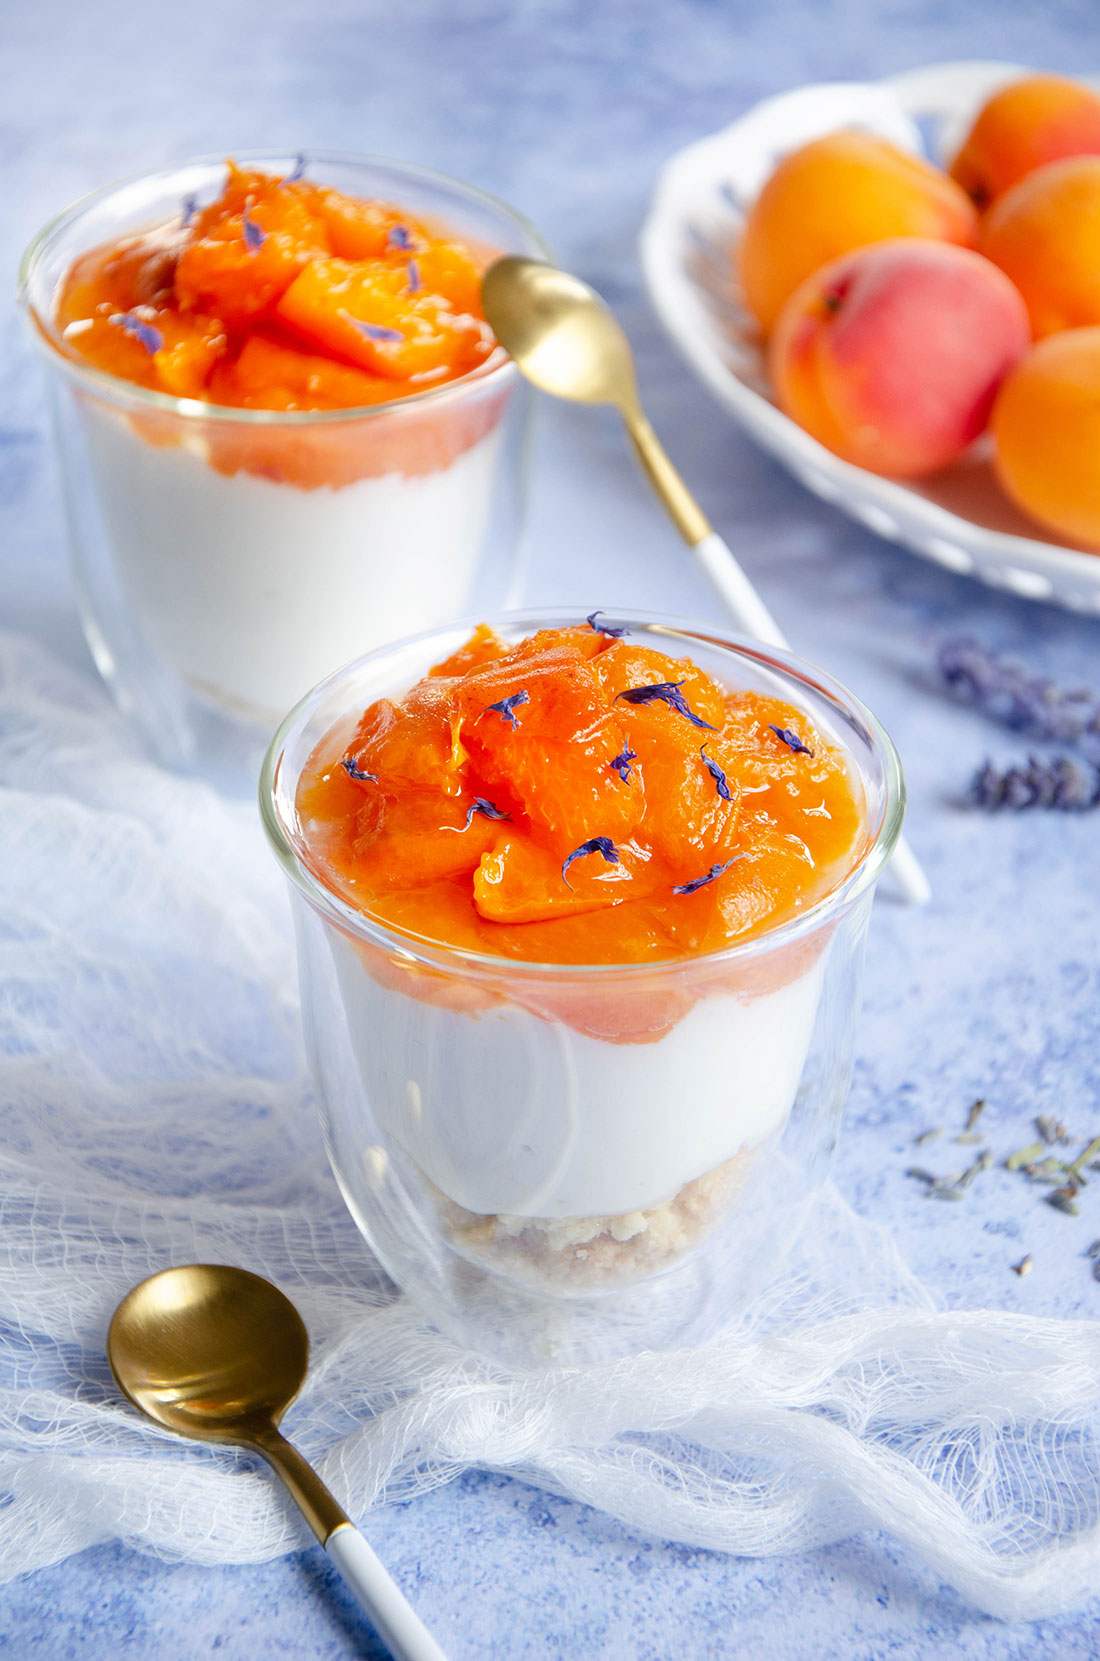 Recette de verrines yaourt grec abricots frais